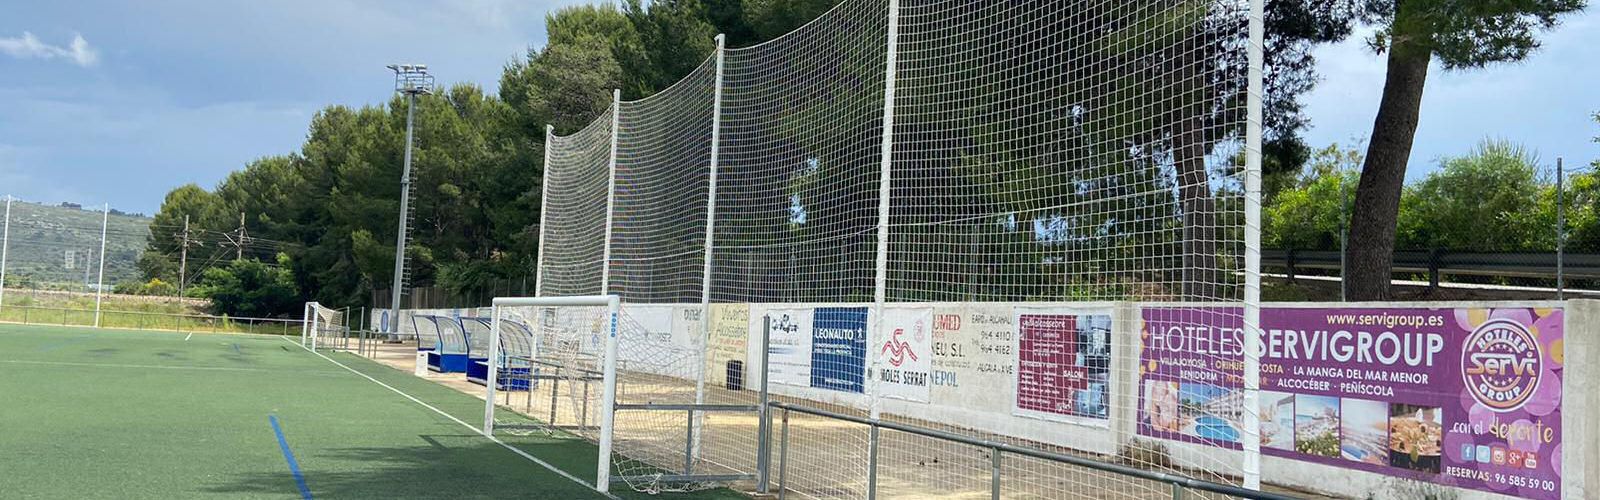 Alcalà-Alcossebre posa a punt les instal·lacions esportives municipals